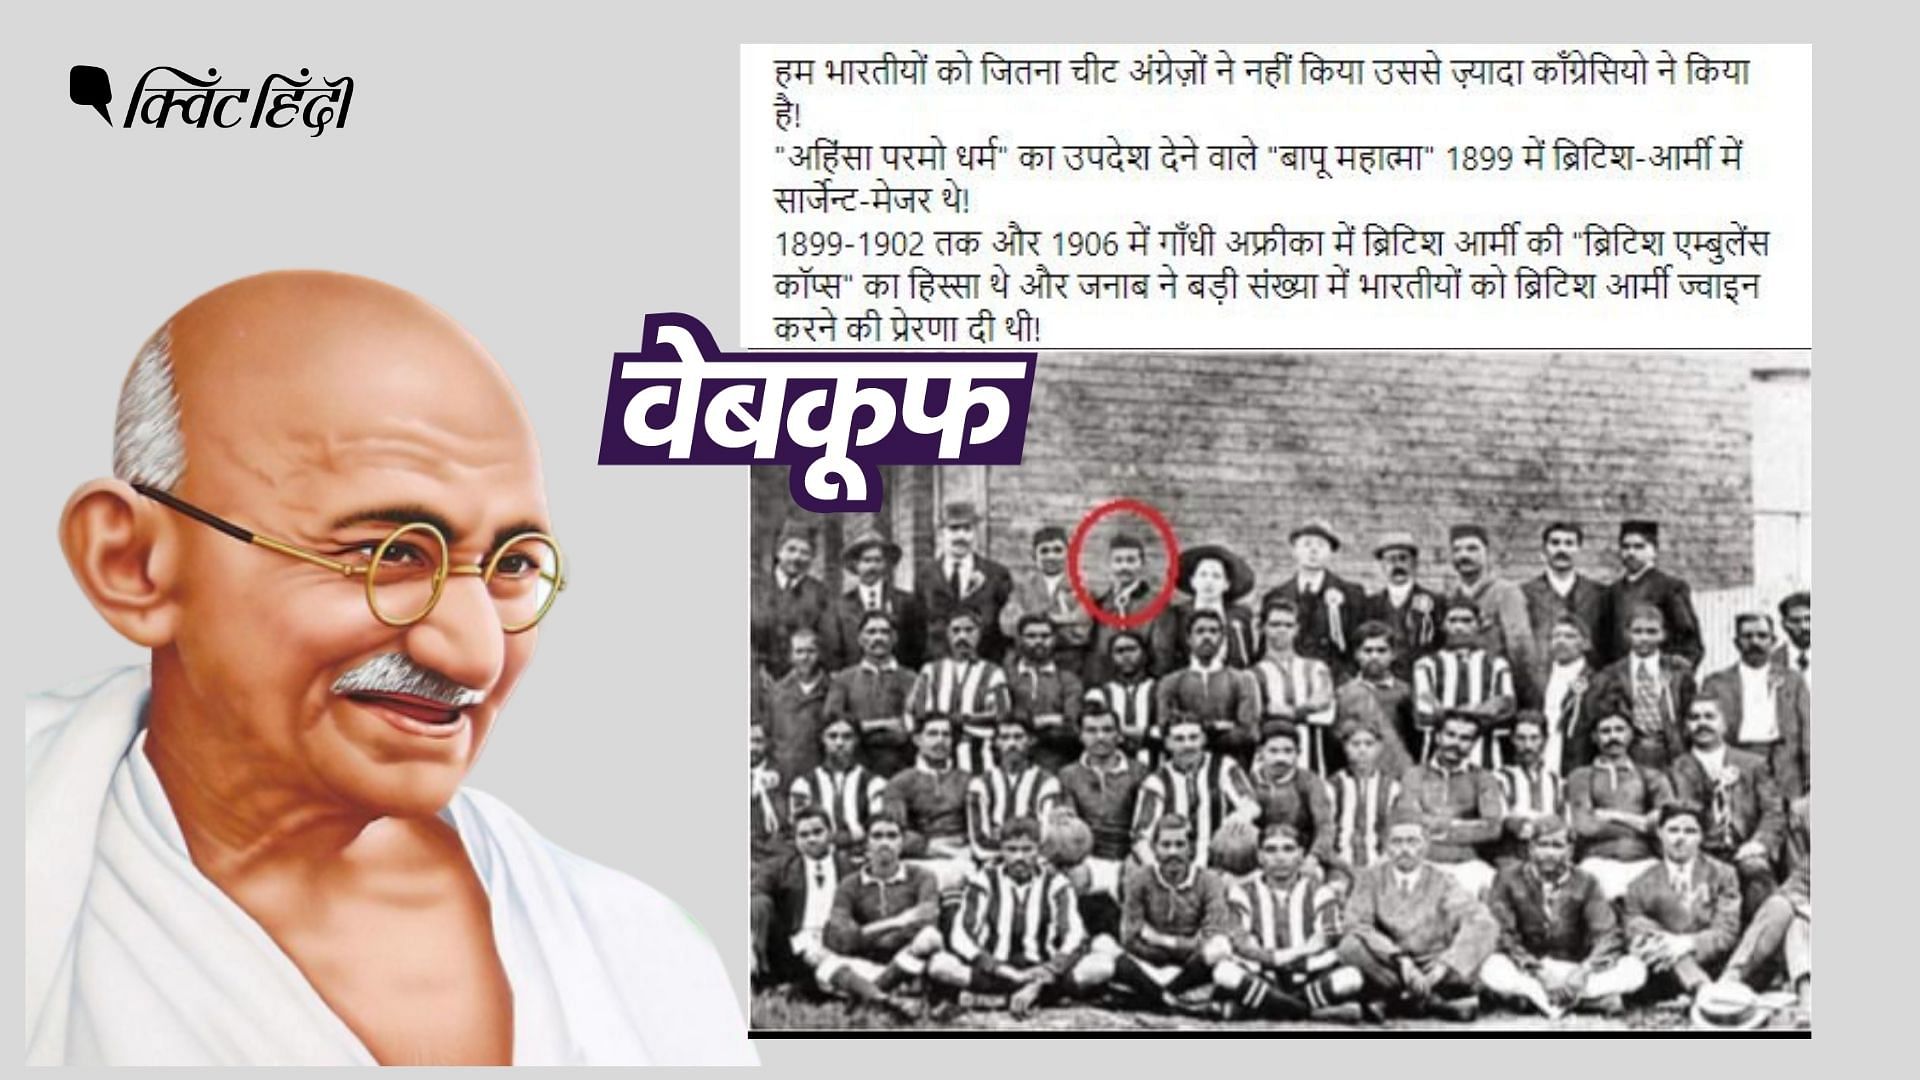 <div class="paragraphs"><p>महात्मा गांधी ने स्वैच्छिक रूप से 'एंबुलेंस कॉर्प्स' की स्थापना की थी..</p></div>